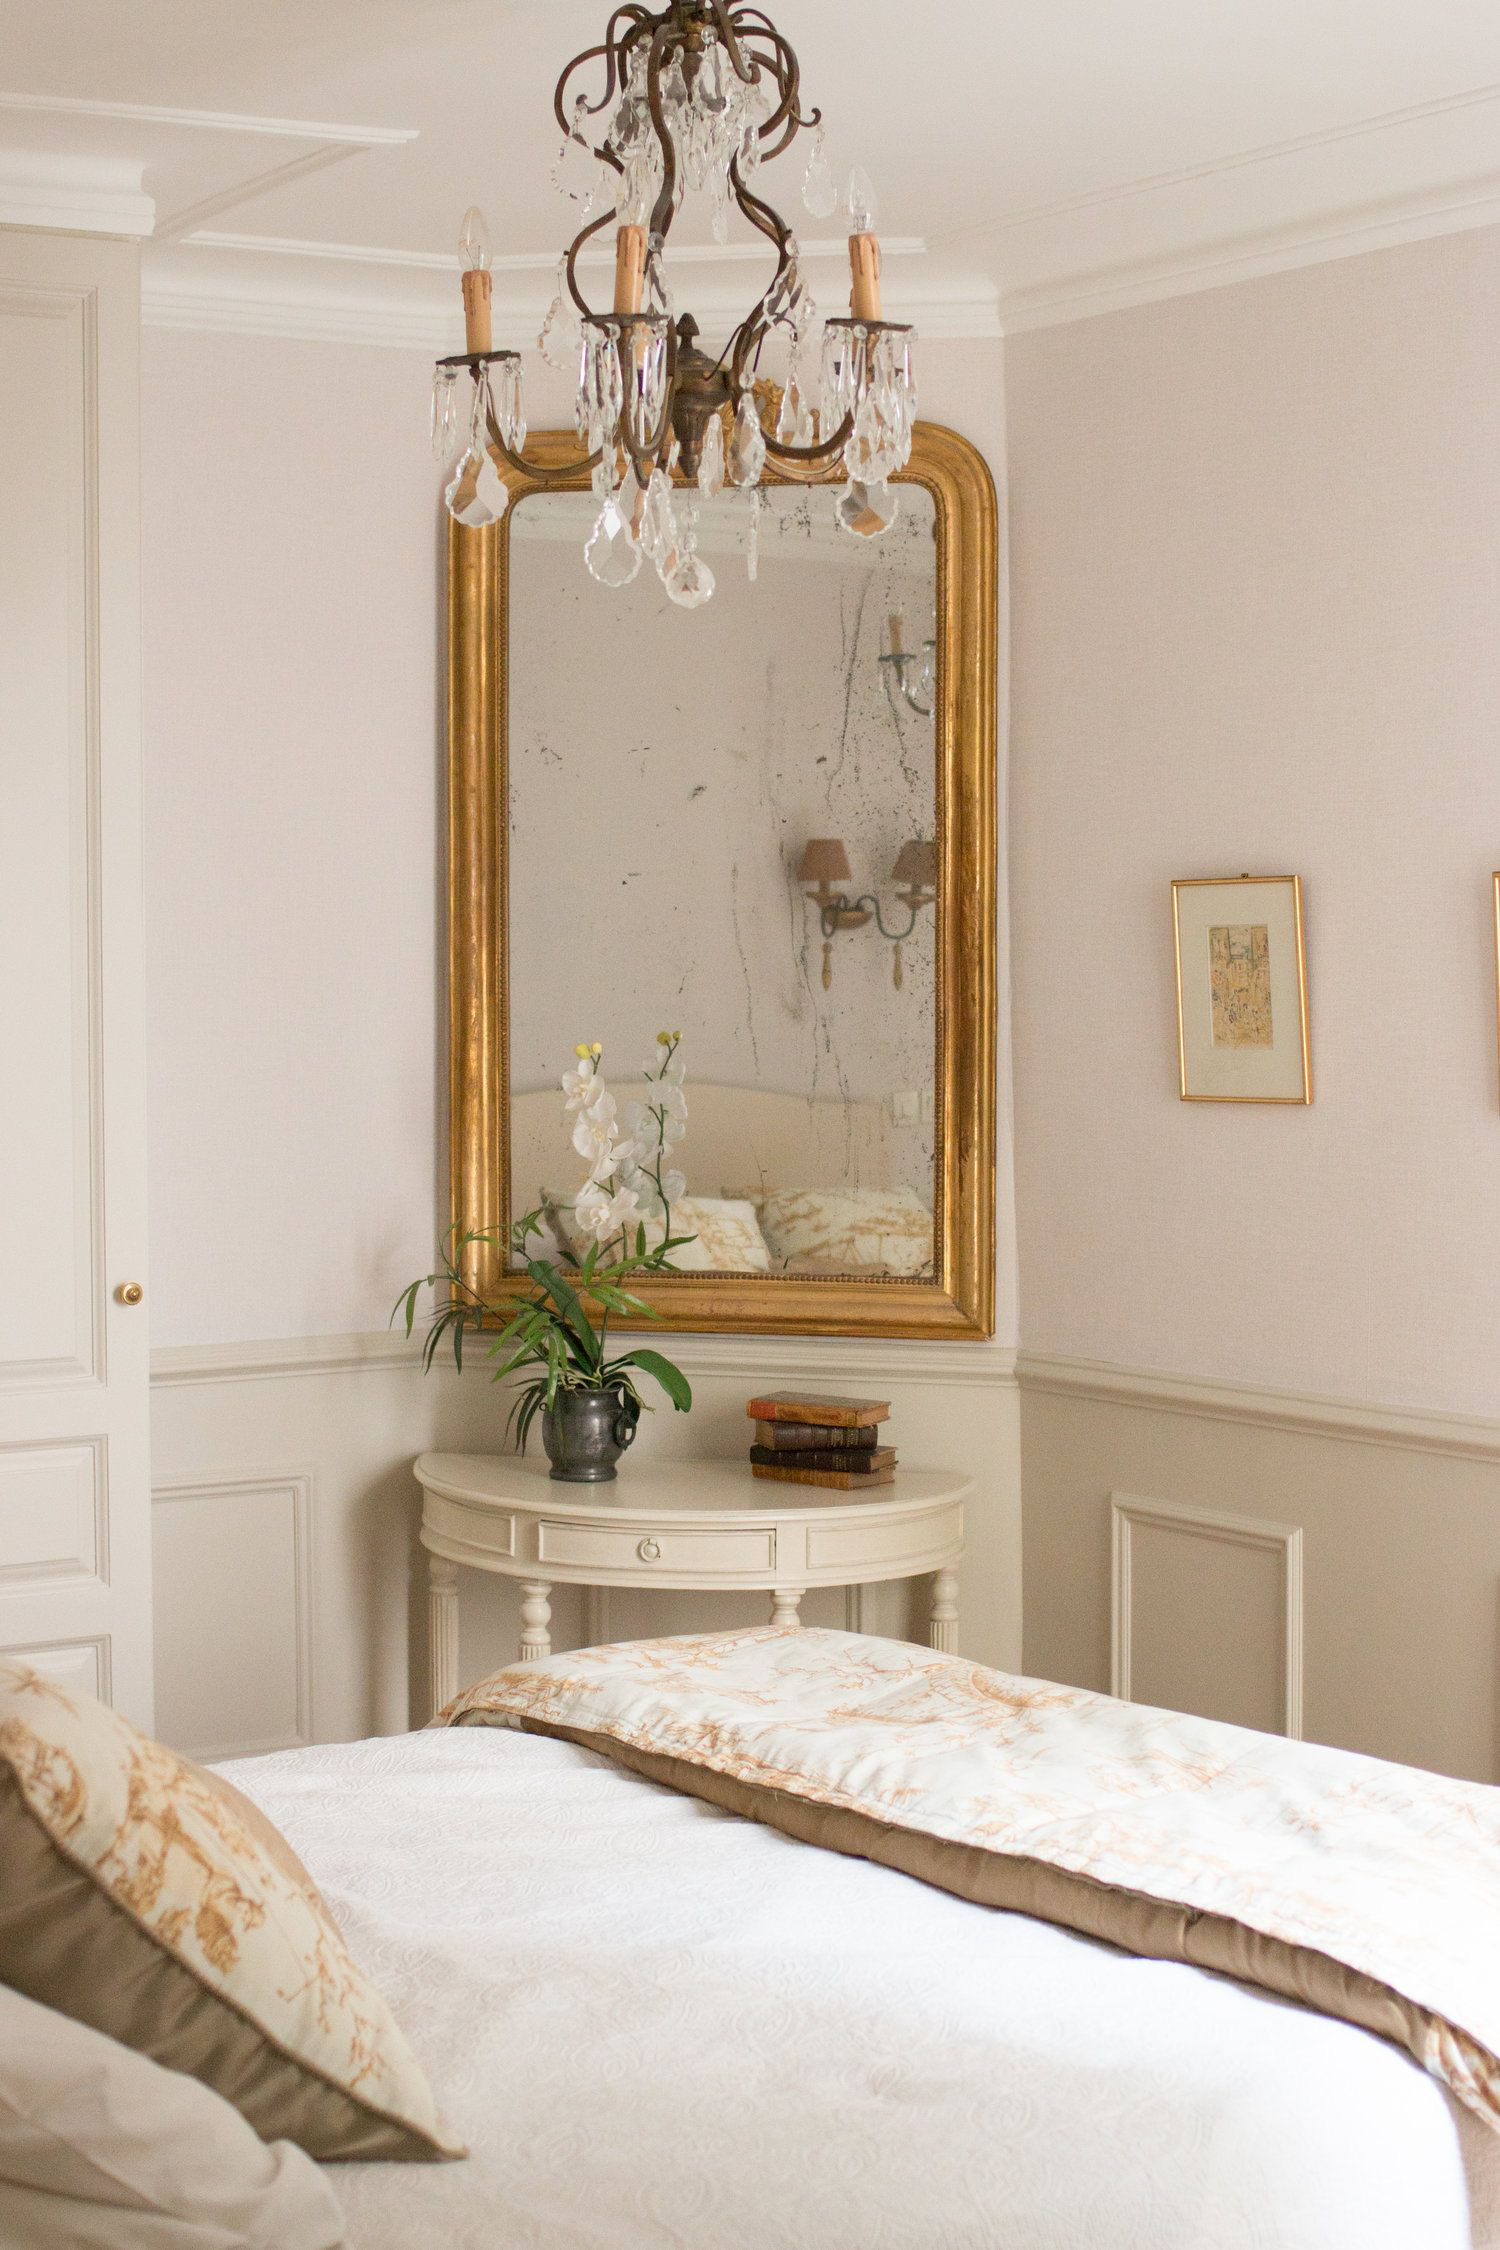 15 ý tưởng màu sắc phòng ngủ theo phong cách cổ điển ngọt ngào - Ảnh 15.